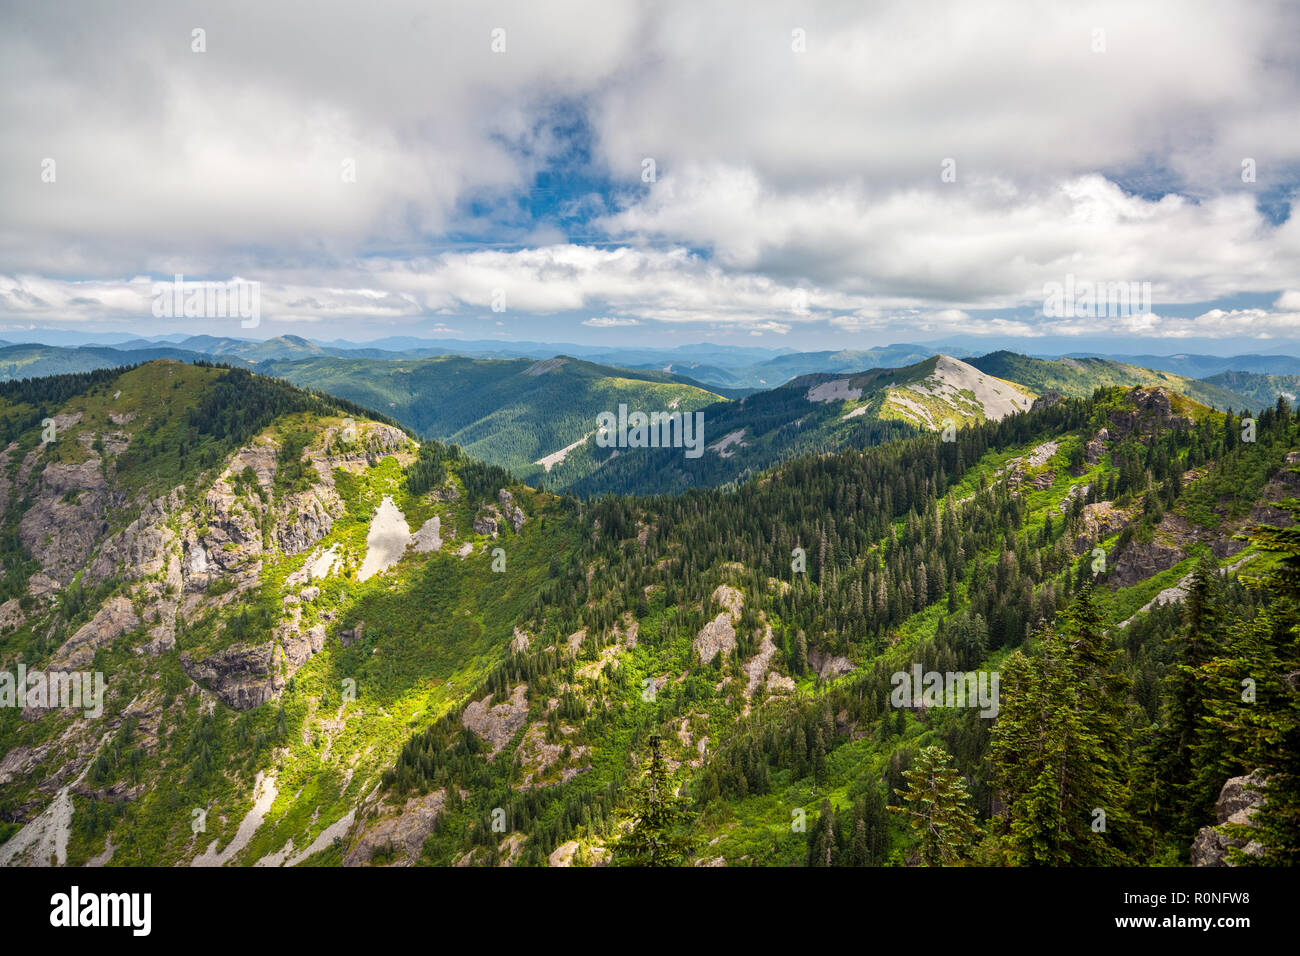 Tolle Aussicht auf die südlichen Cascade Mountains im Staat Washington, die sich auf ewig an einem schönen Tag zu gehen scheinen Stockfoto